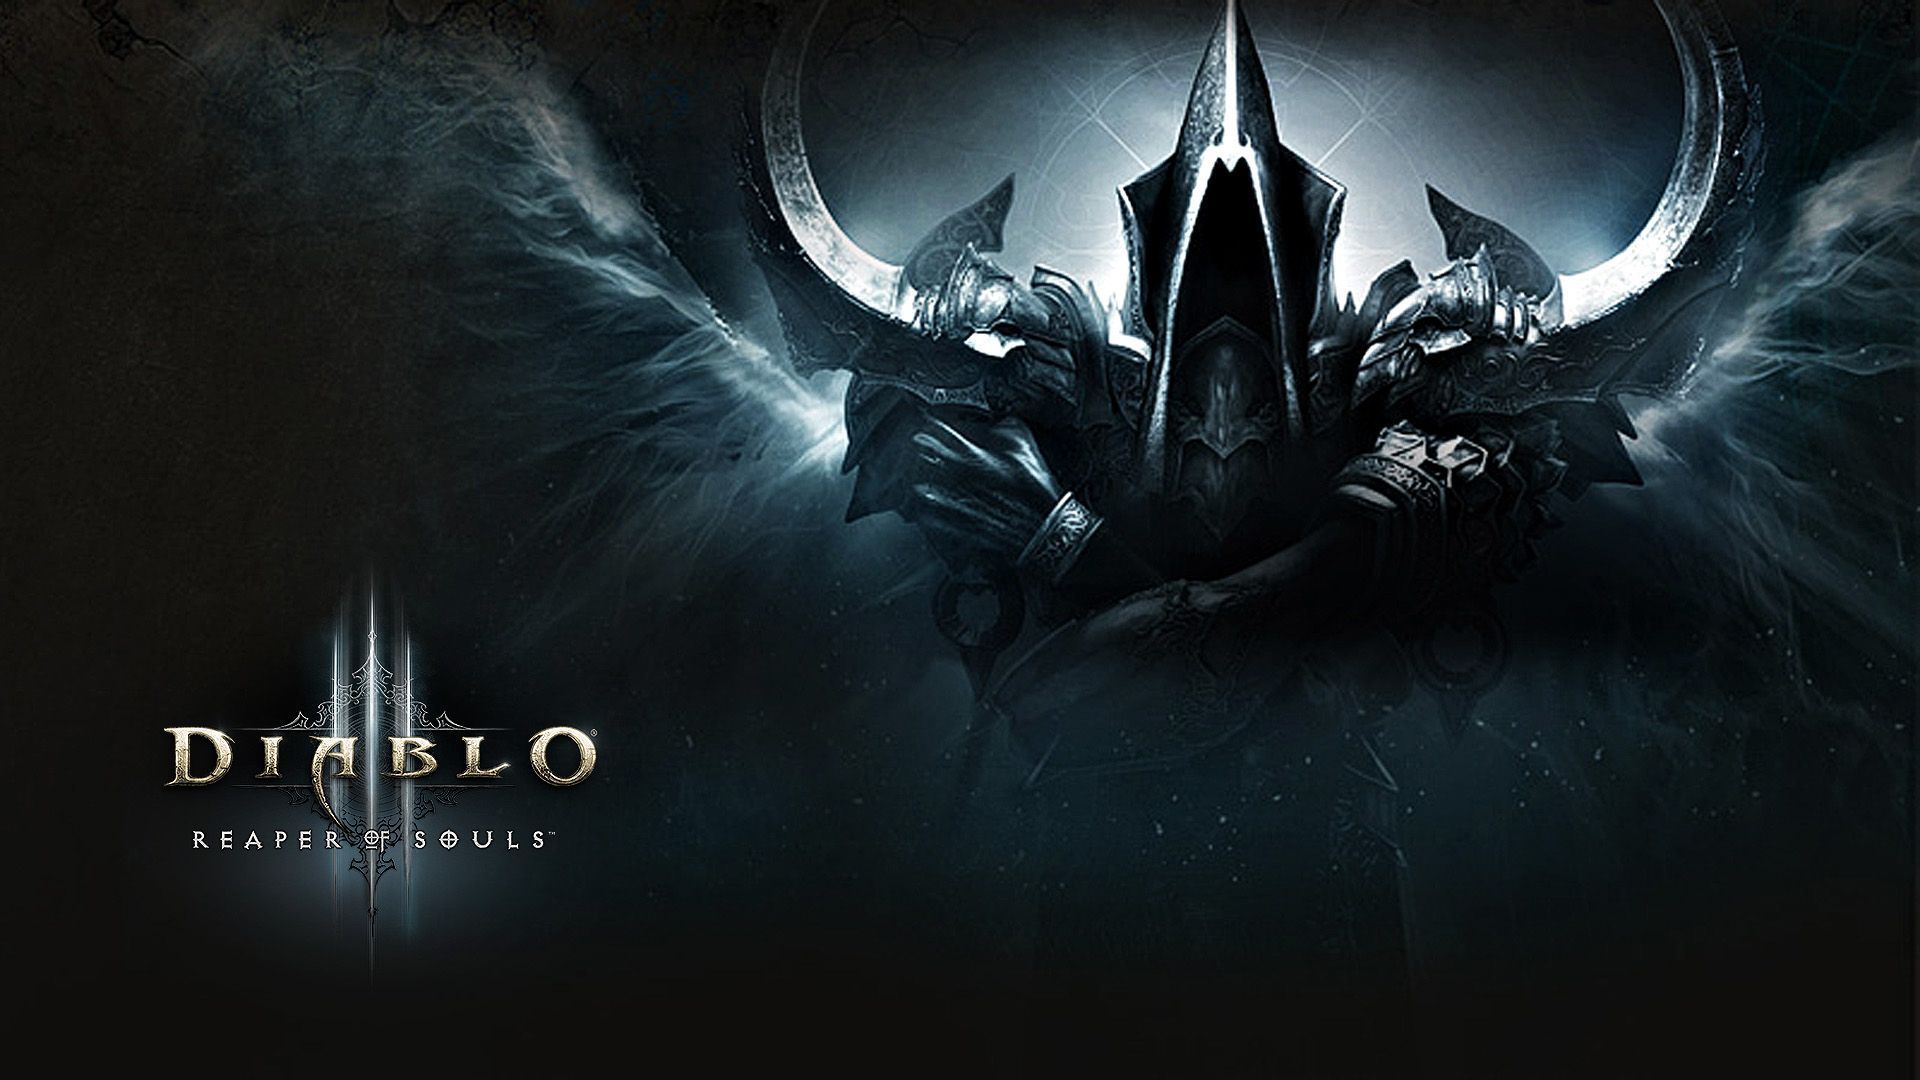 Diablo 3 Screensaver Wallpapers